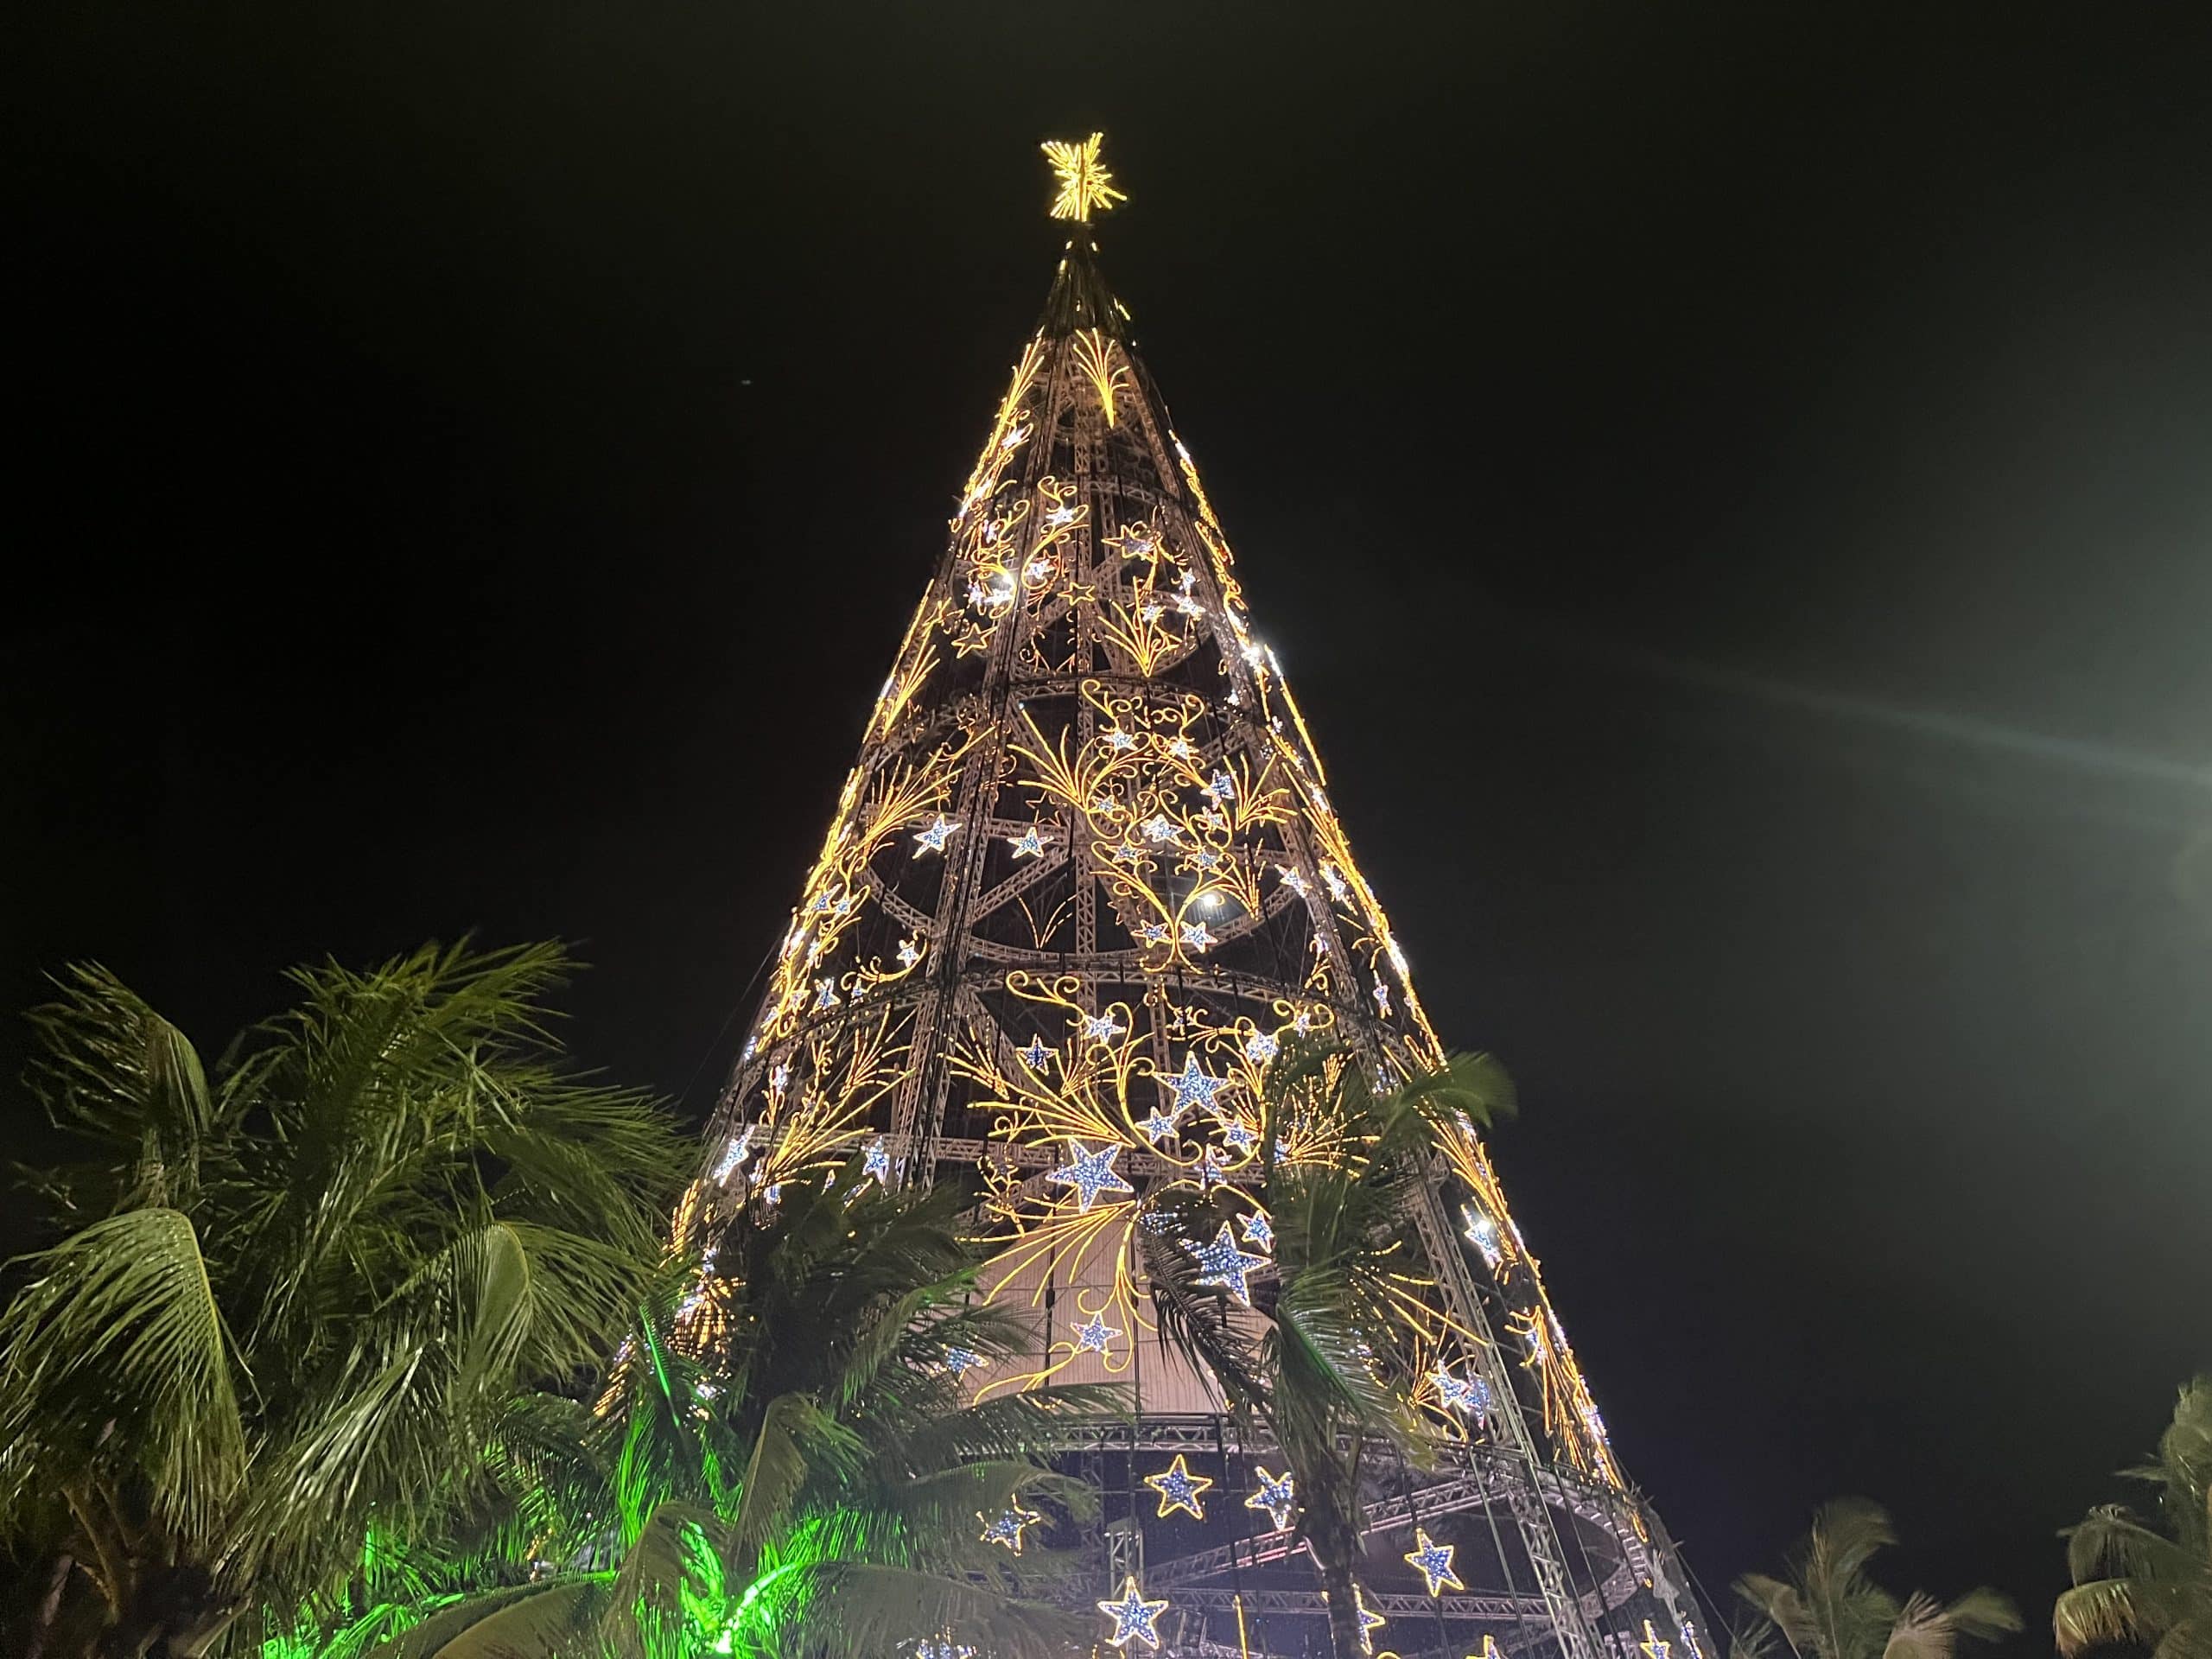 E de repente, é Natal! Árvore de São Francisco ilumina Niterói e atrai  multidão — A Seguir Niterói